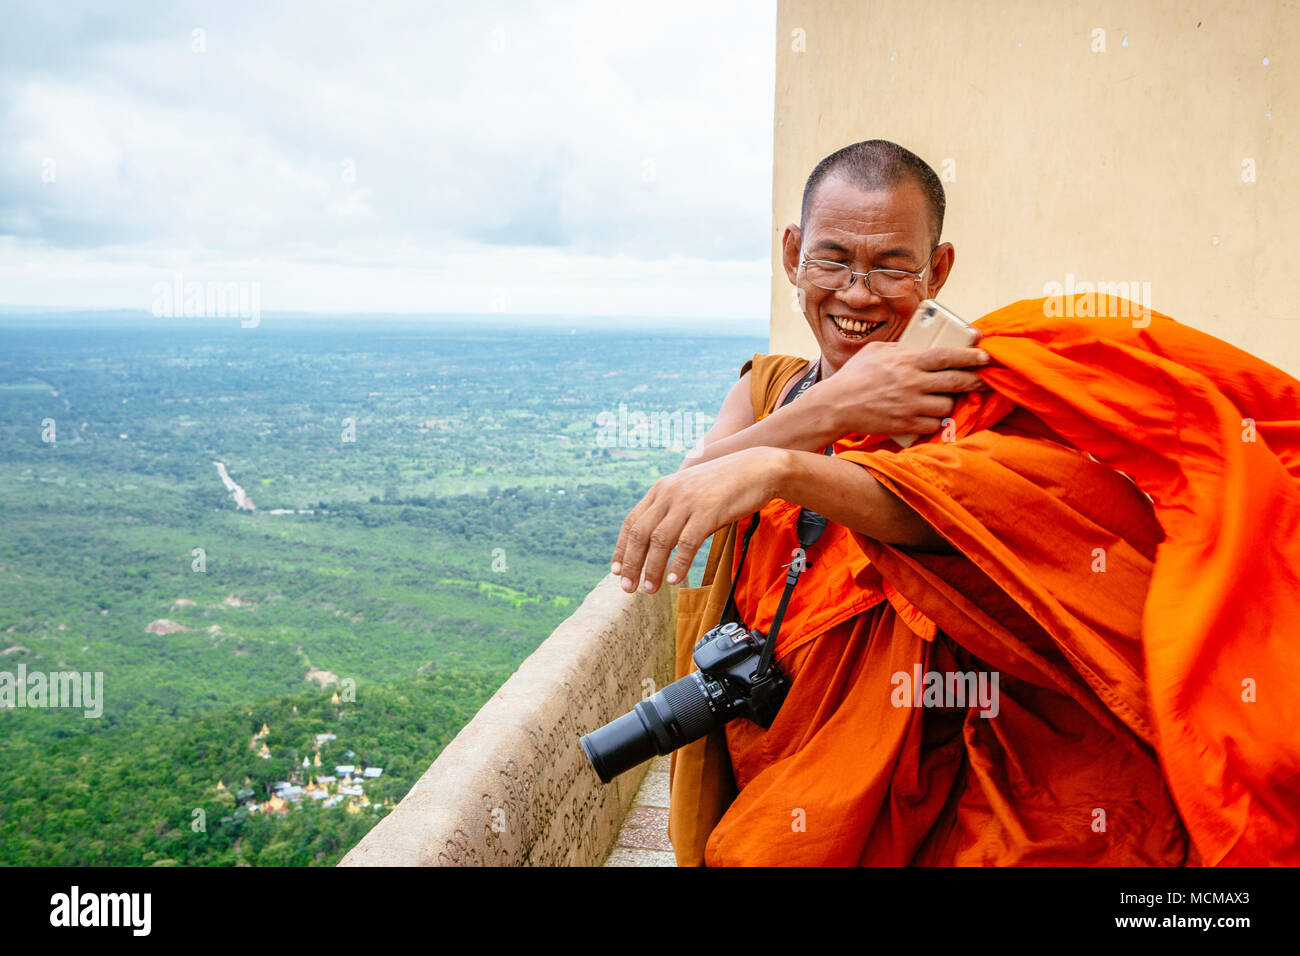 Le moine bouddhiste en souriant après avoir pris des photos de sommet du mont Popa, Myanmar Banque D'Images